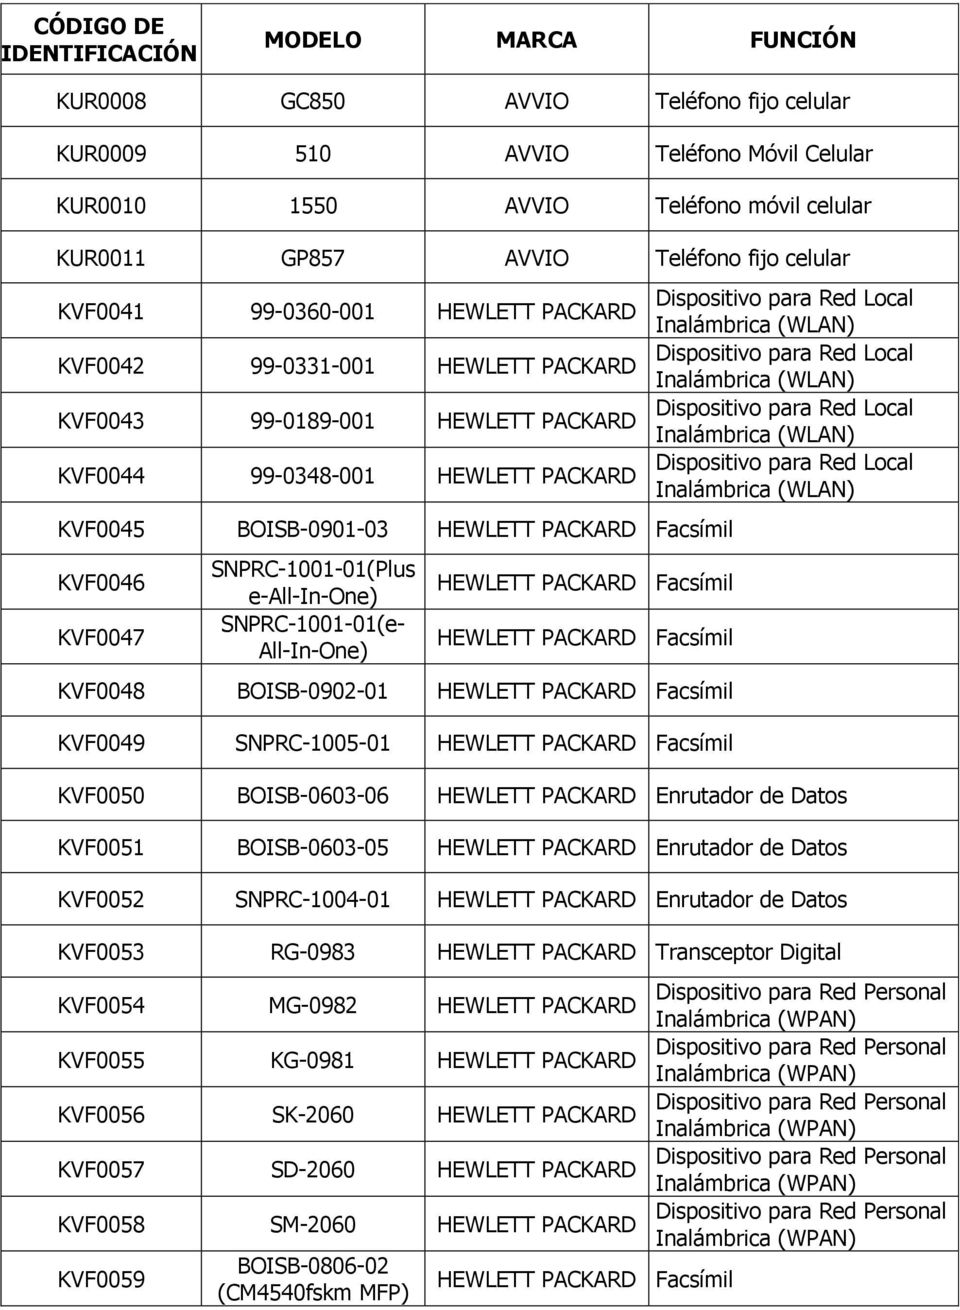 e-all-in-one) SNPRC-1001-01(e- All-In-One) HEWLETT PACKARD Facsímil HEWLETT PACKARD Facsímil KVF0048 BOISB-0902-01 HEWLETT PACKARD Facsímil KVF0049 SNPRC-1005-01 HEWLETT PACKARD Facsímil KVF0050